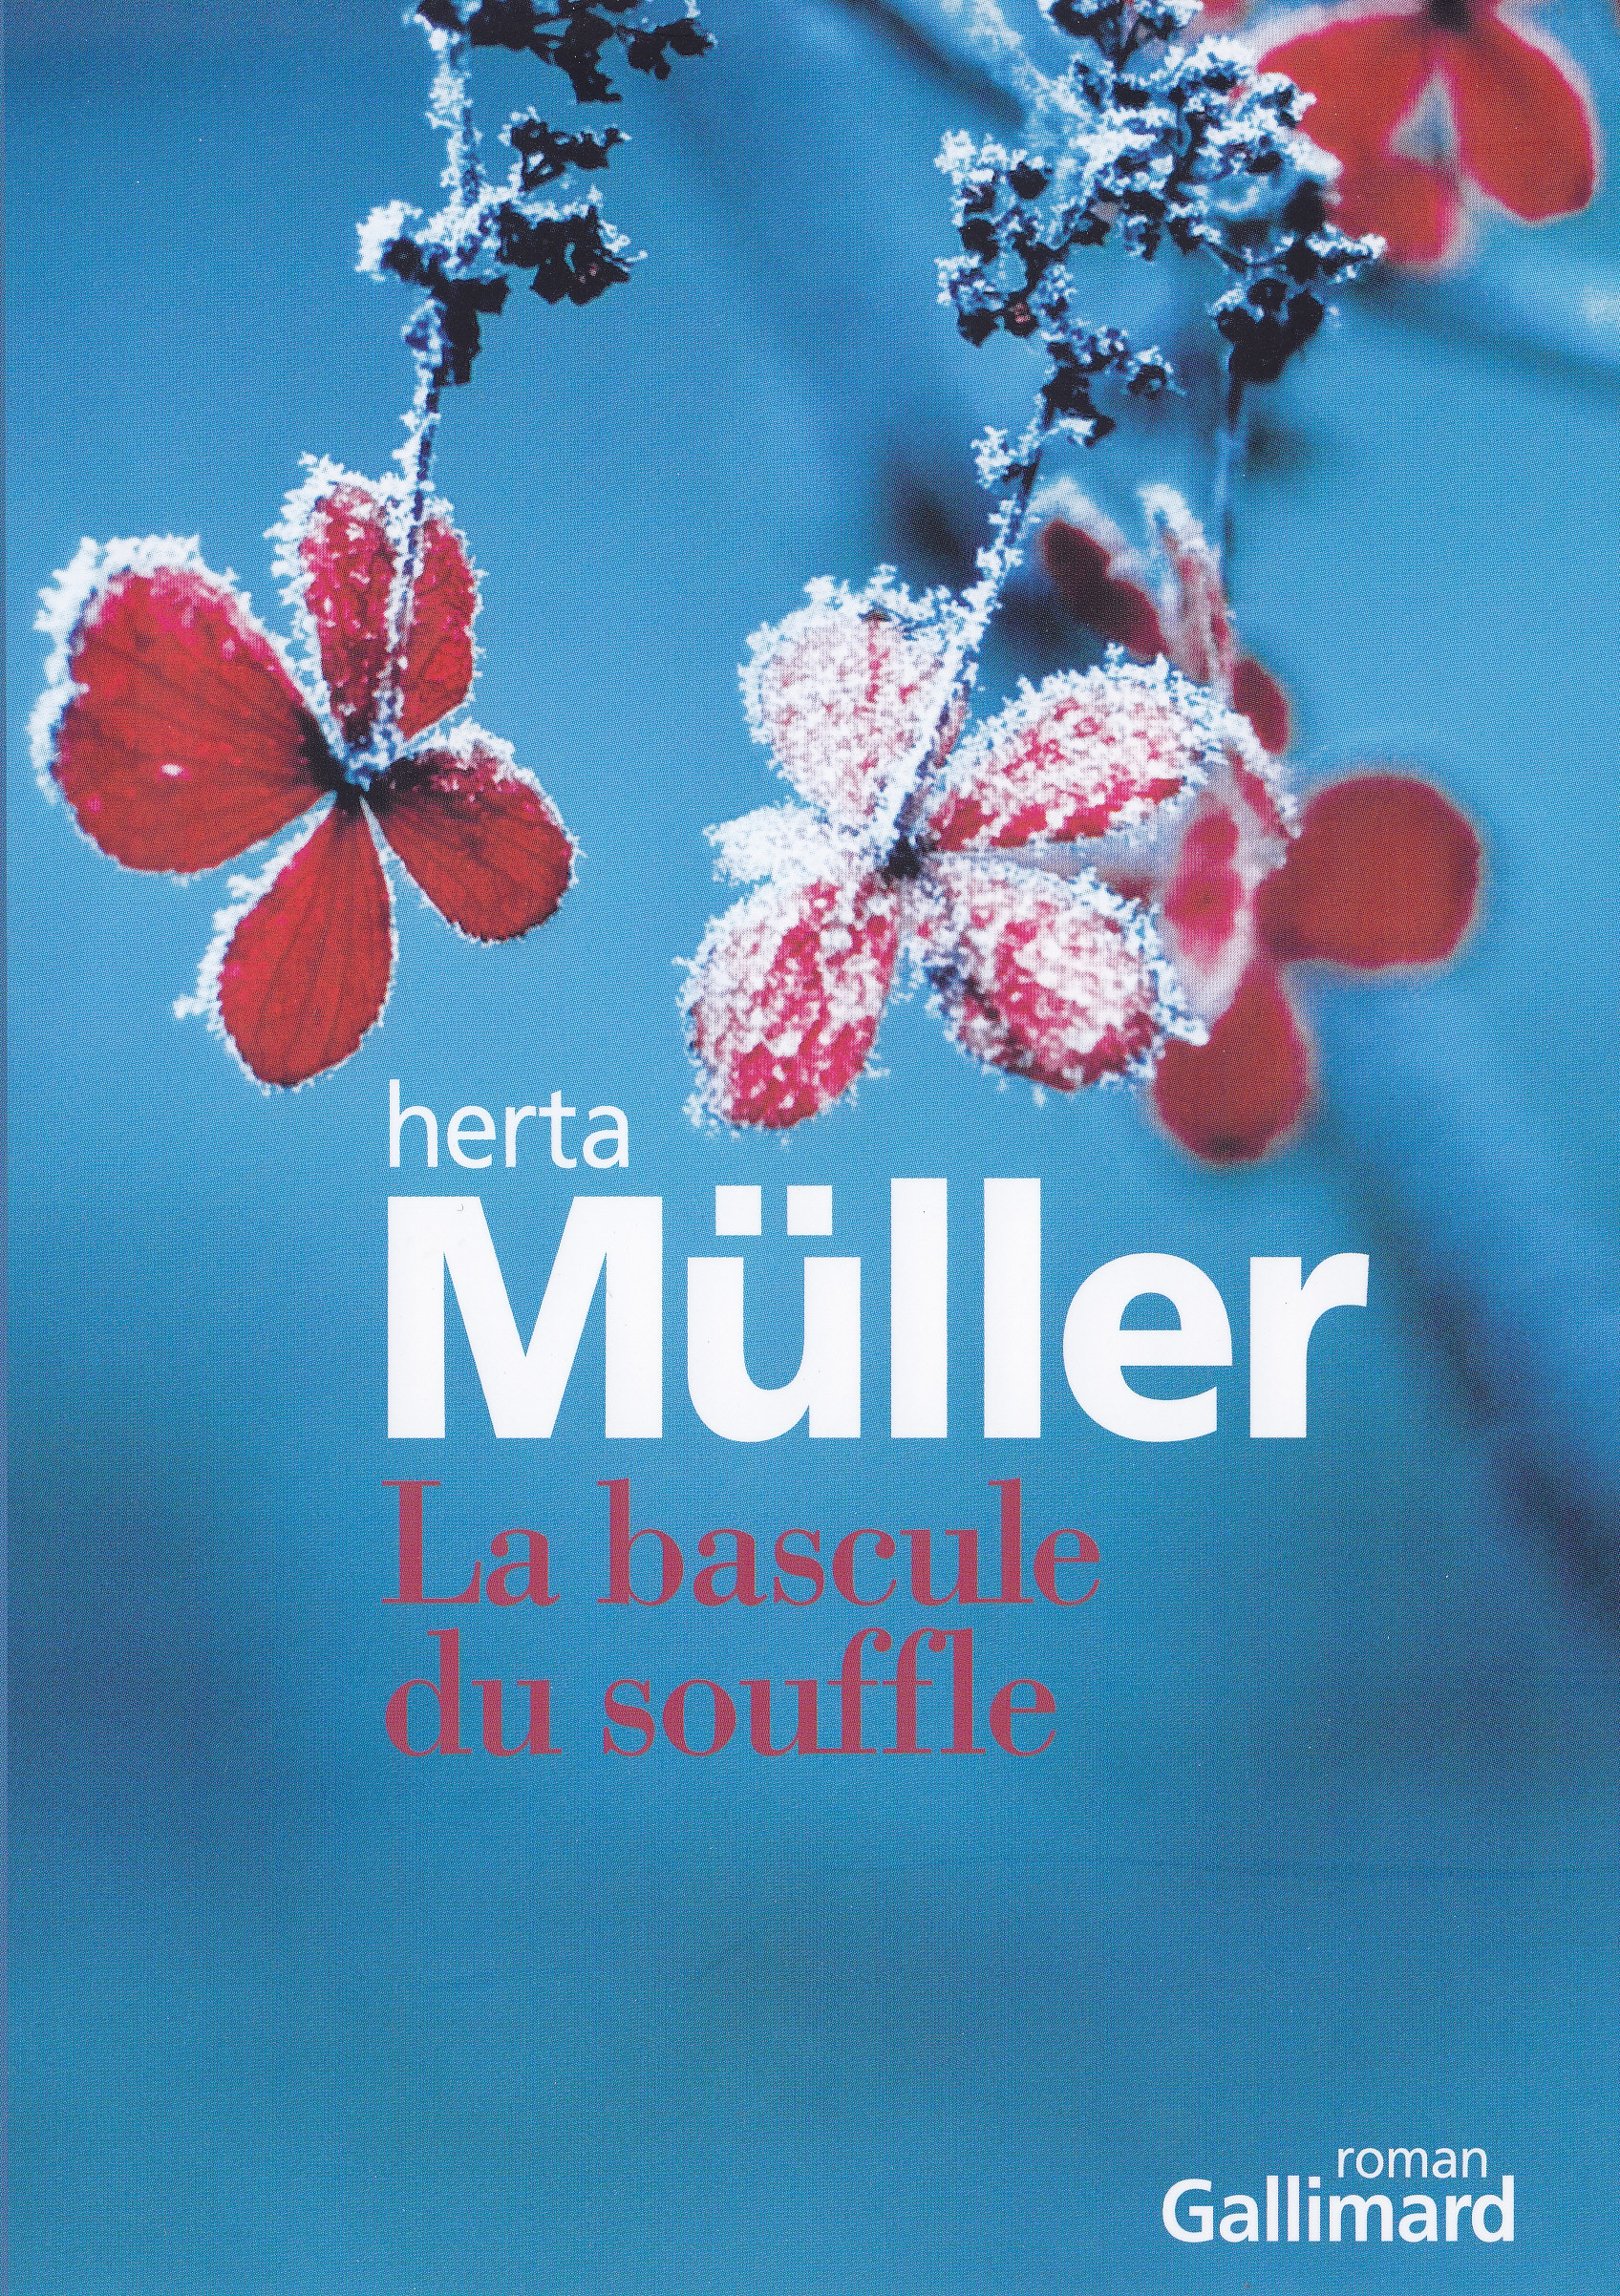 Herta Müller, La bascule du souffle